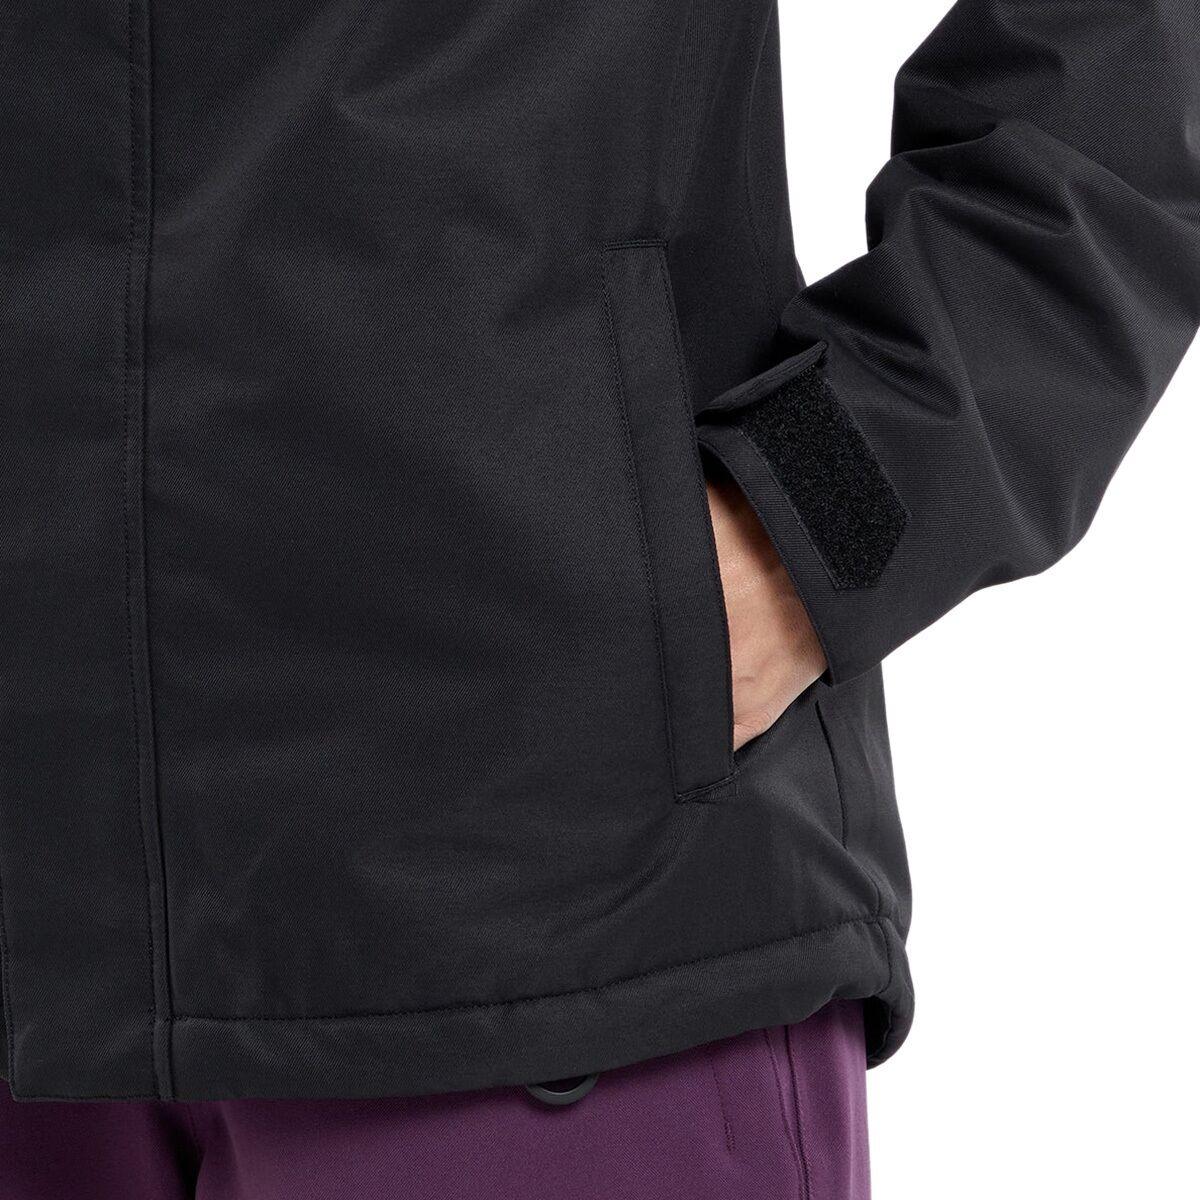 Volcom Bolt Insulated Jacket - Women's